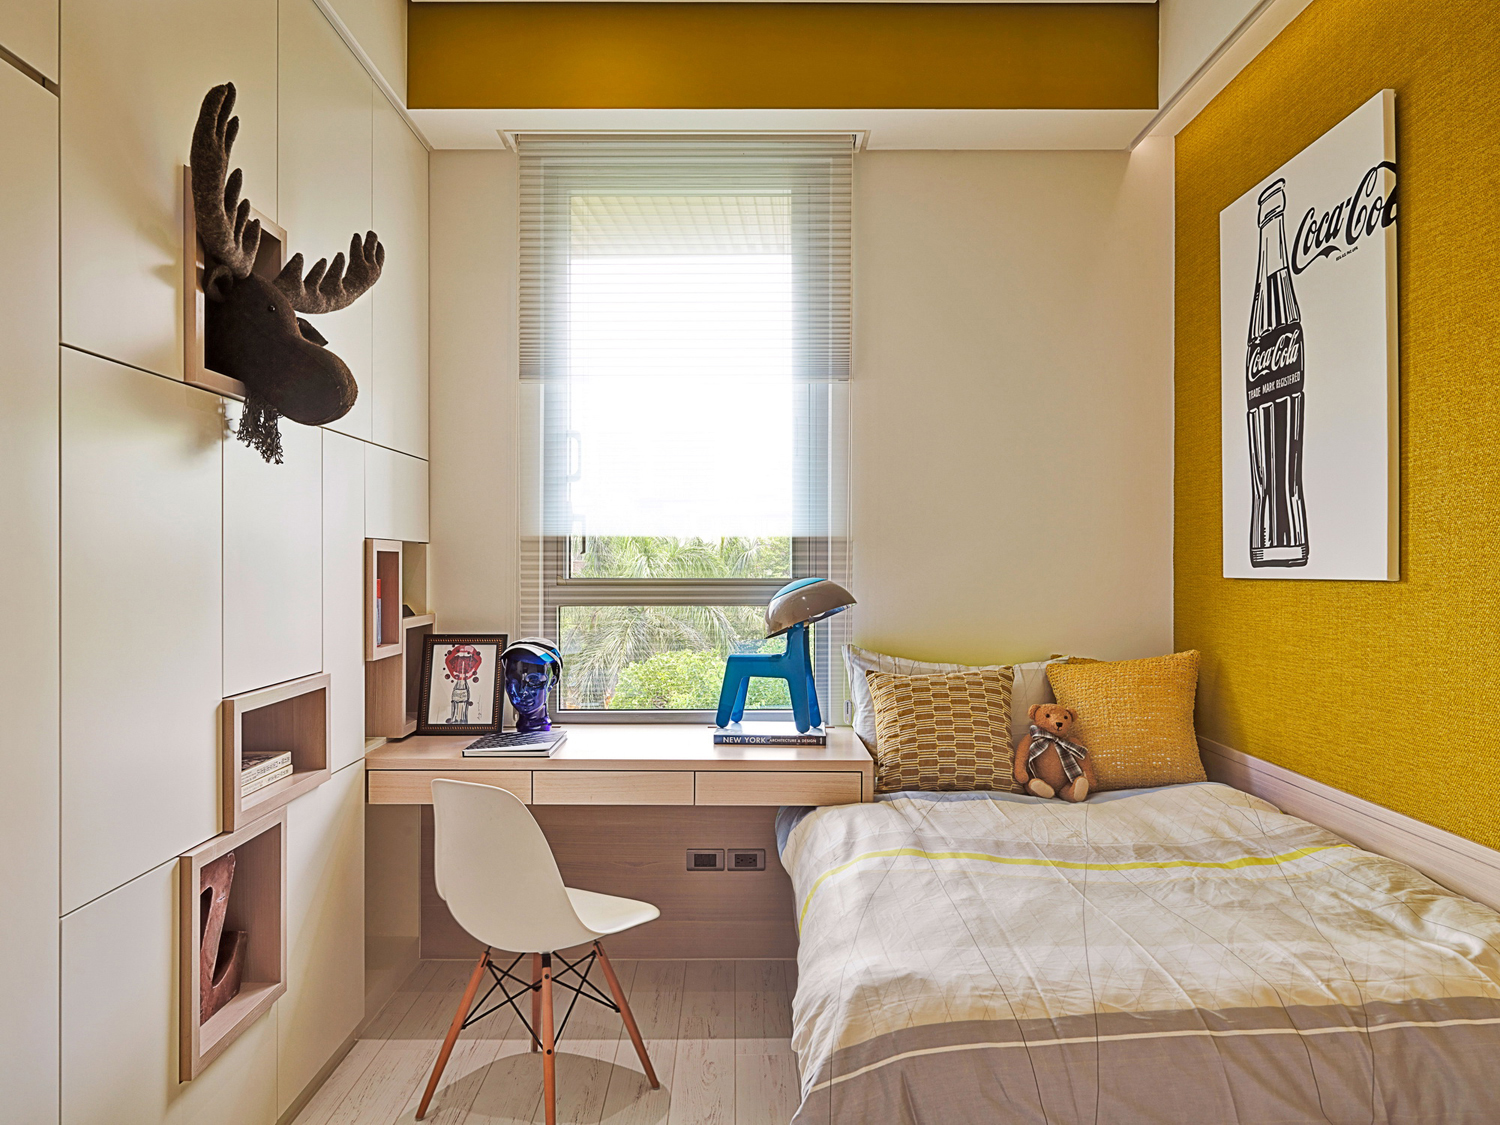 红黑黄组成的强烈的立体主义色块结构的茶几，继续着夏洛特对色彩的无限激情，营造了一种纯粹的抽象的家居印象。每一个细节，从窗帘到餐椅，都是独具匠心的，形态与空间走势相连，B&B黄色定制的餐椅，以及落地窗帘黄色的呼应，这样形状及色彩的划分给空间带来一种动态的平衡关系，通过错层关系产生一种和谐与韵律。家中的艺术博物馆点缀在各个空间中，由内而外，形成了另一种文化的循环，与居家空间的人本精神暗暗相合，还与远山、屋外的树共生，在此安家，心有所归。